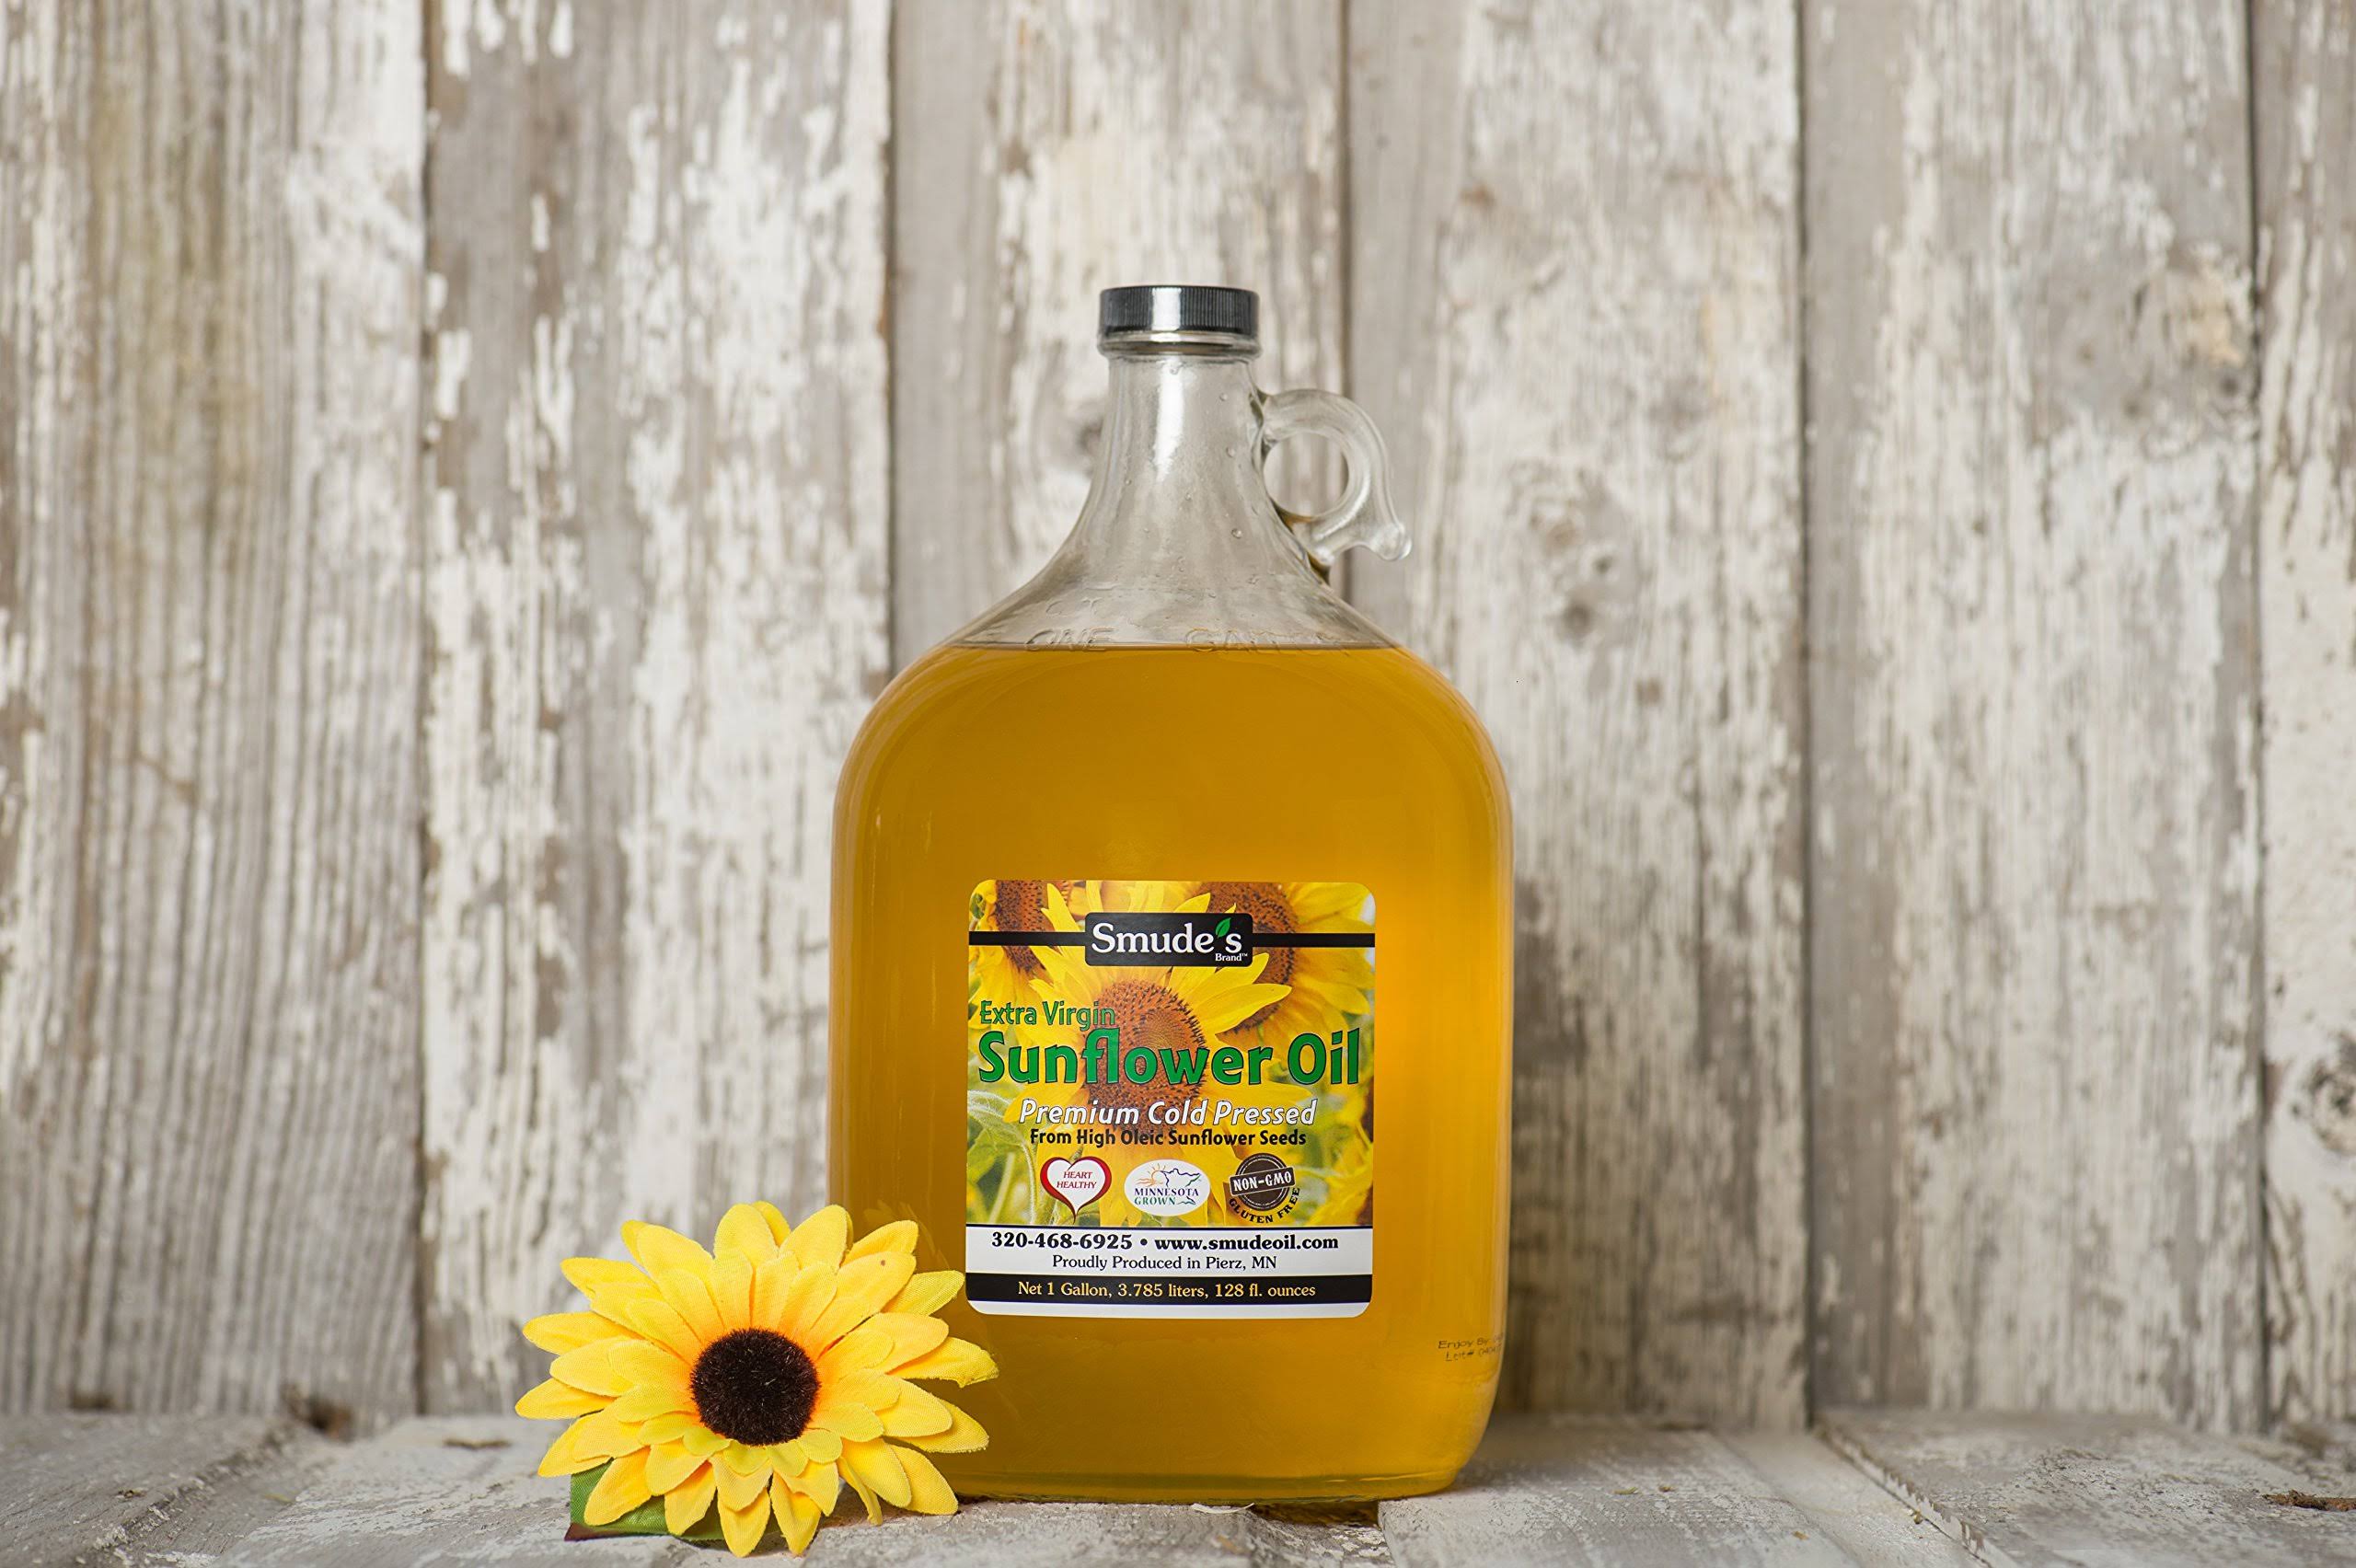 Smude Sunflower Oil 1 Gallon Glass